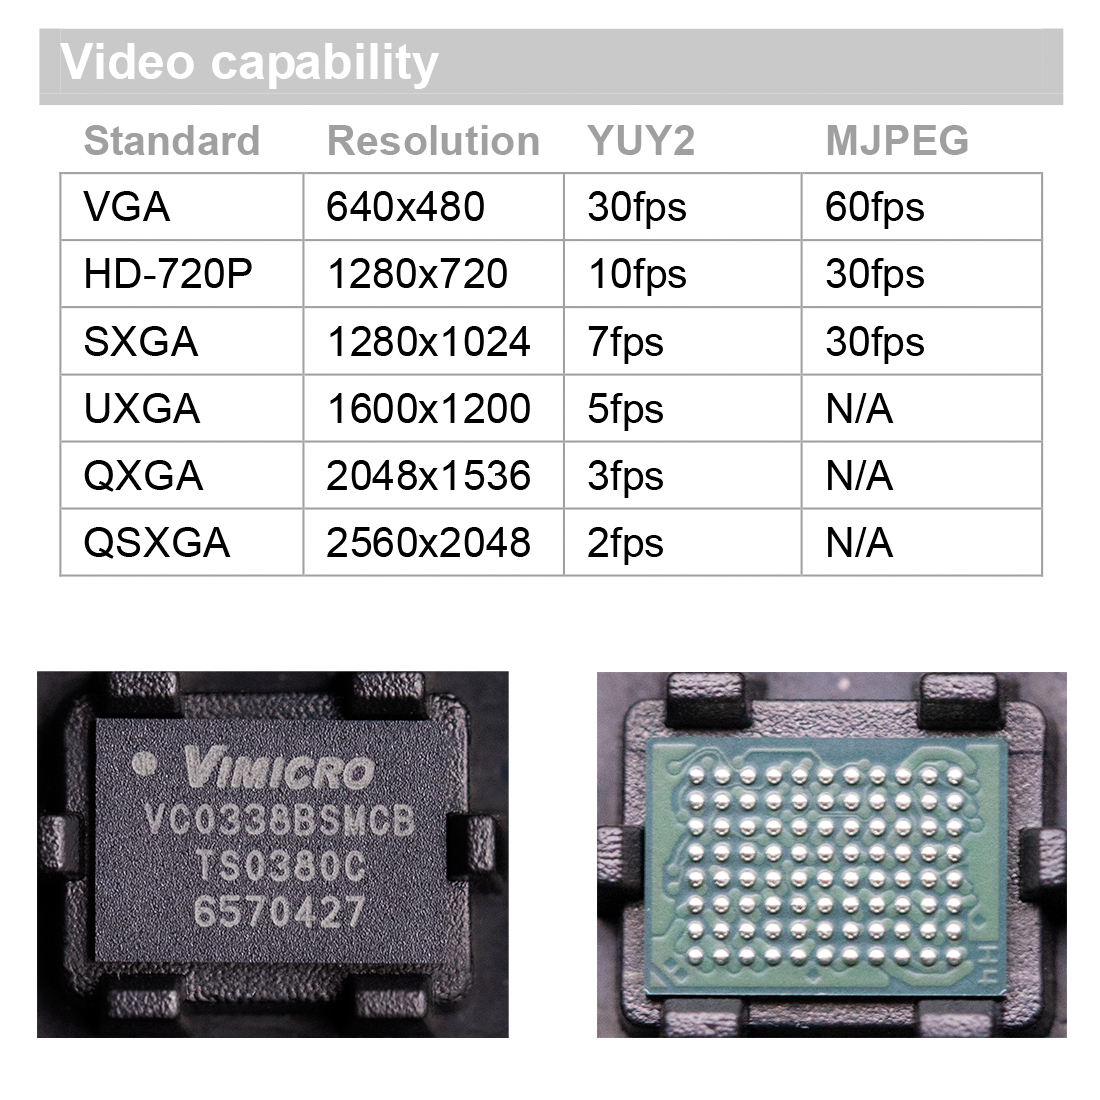 VC0338BSMCB,中星微Vimicro, PC CAMERA摄像头处理器,超小型封装，BGA88，USB2.0主控IC